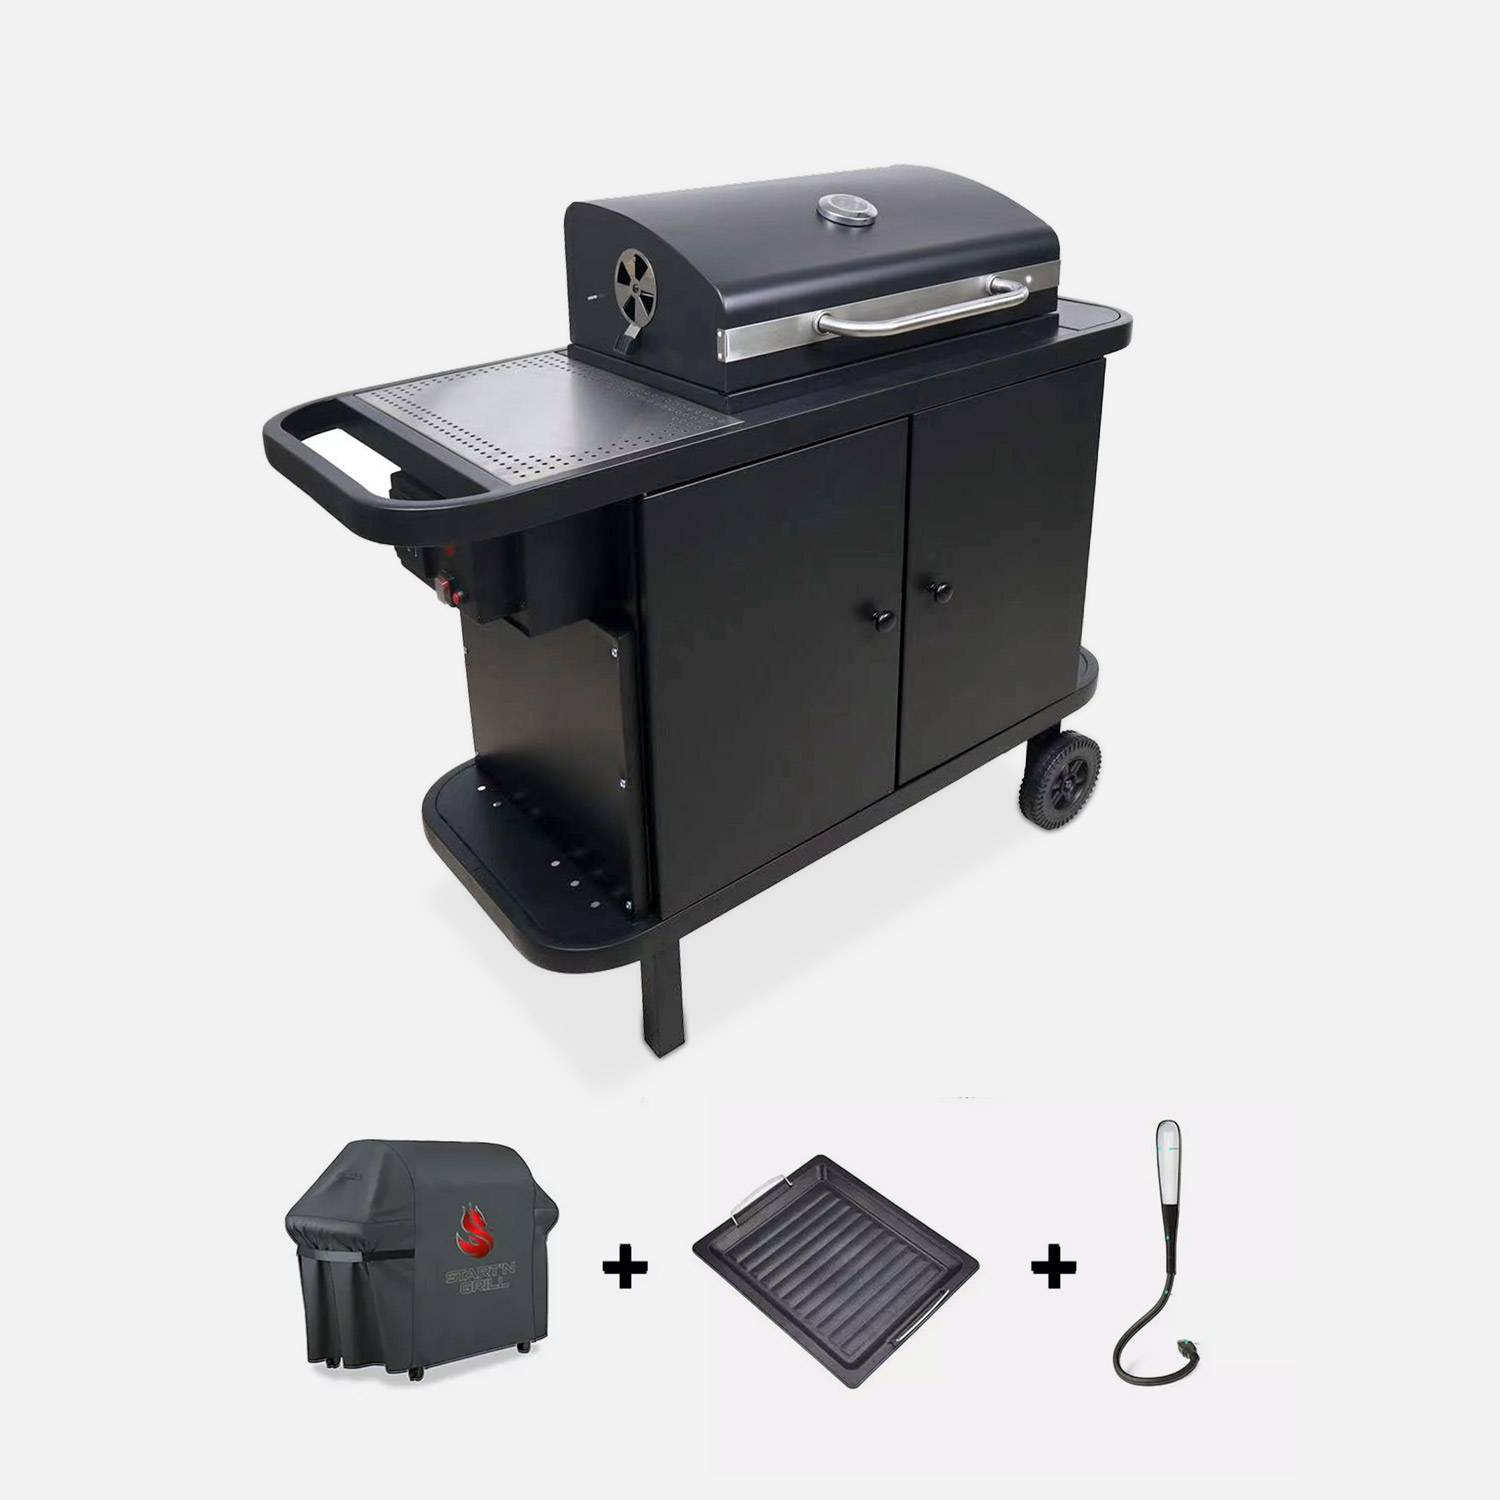 Houtskoolbarbecue - SNGONE 2.0 noir - barbecue met Bluetooth-verbinding, automatische ontsteking, deksel, bakplaat, USB LED-verlichting, gereedschaphouder, warmhoudrooster & asvanger Photo1